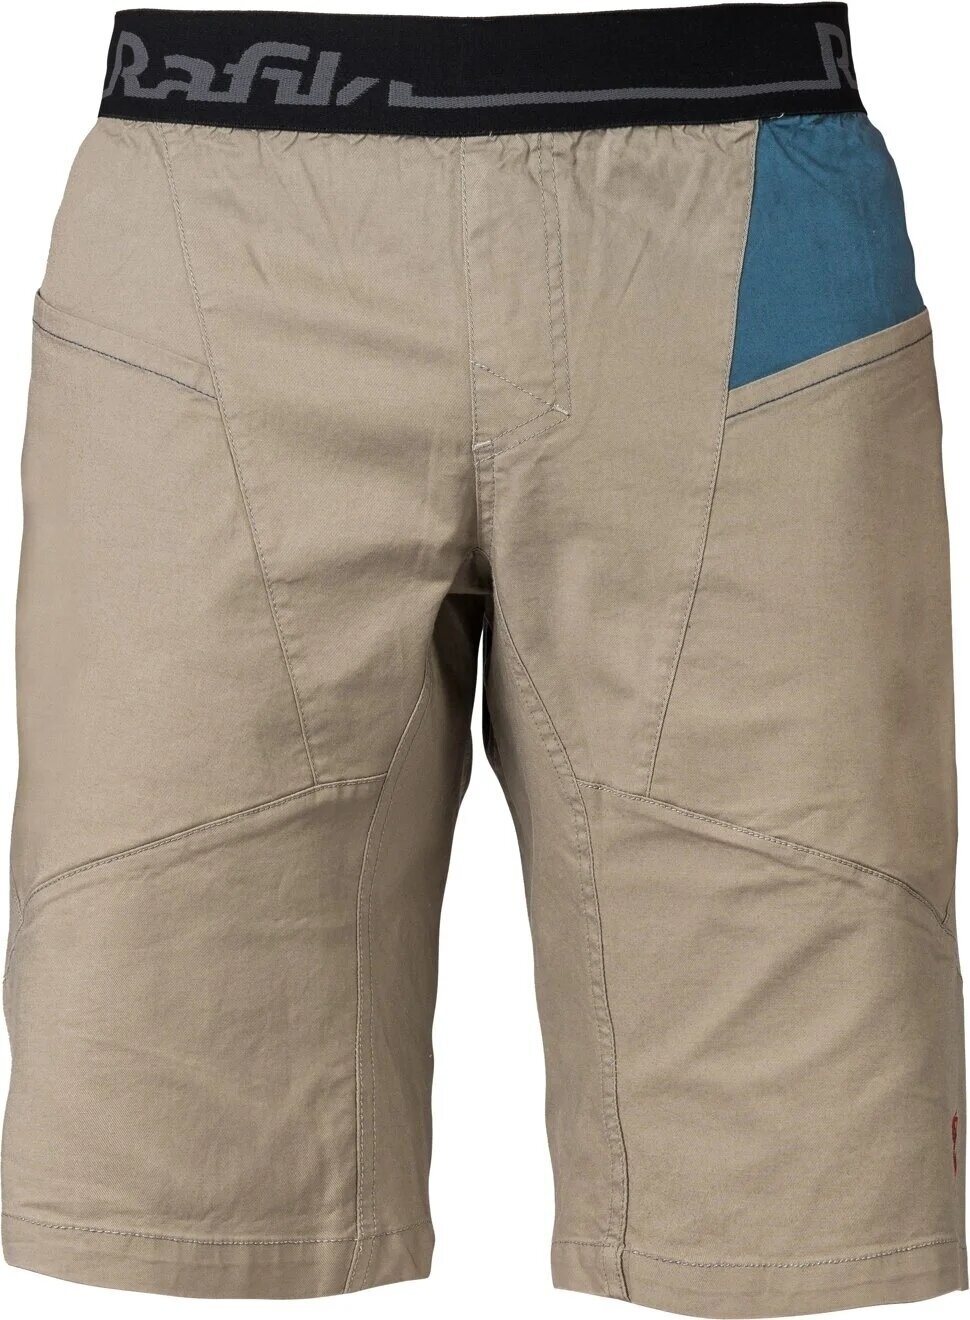 Outdoorové šortky Rafiki Megos Man Shorts Brindle/Stargazer XL Outdoorové šortky